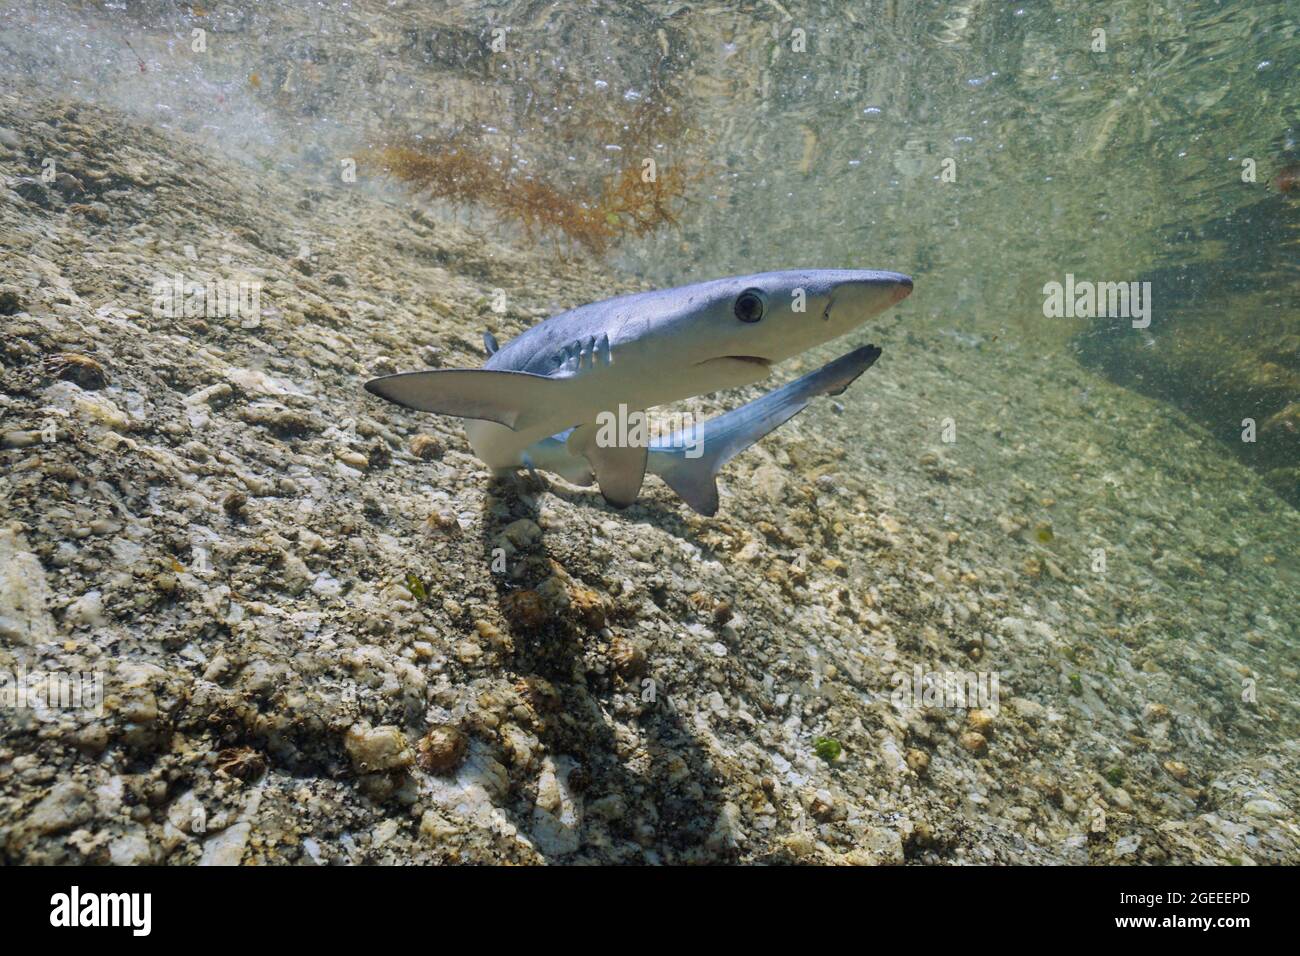 Requin bleu juvénile, Prionace glauca, sous l'eau peu profonde, océan Atlantique, Galice, Espagne Banque D'Images